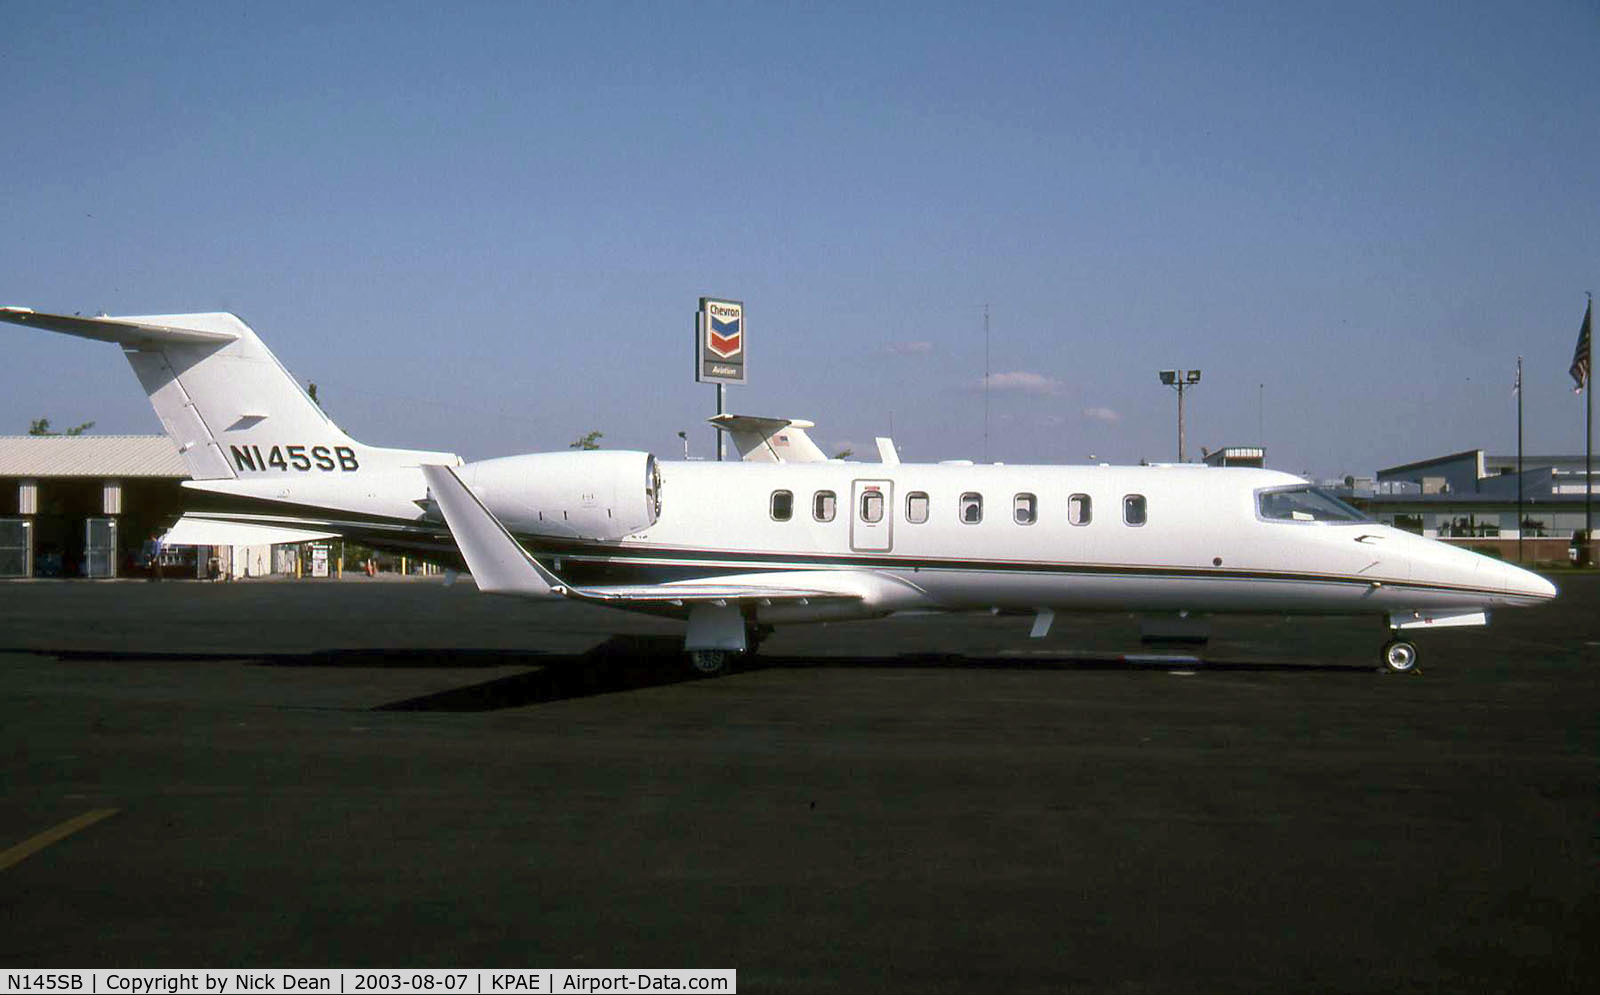 N145SB, 2001 Learjet 45 C/N 142, KPAE